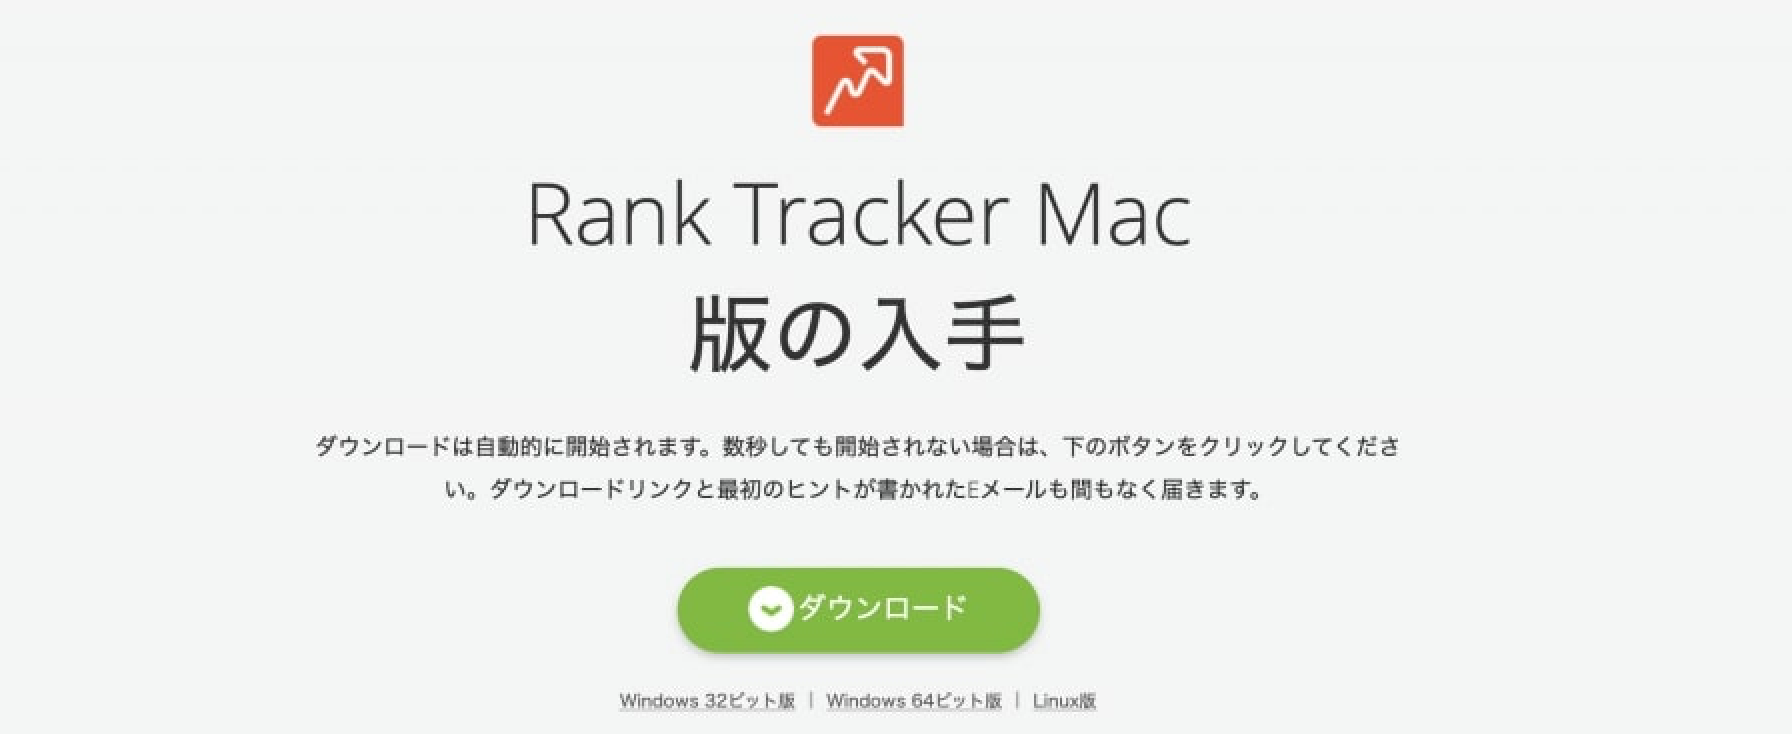 ダウンロードページからRank Tracker「ダウンロード」をクリックする